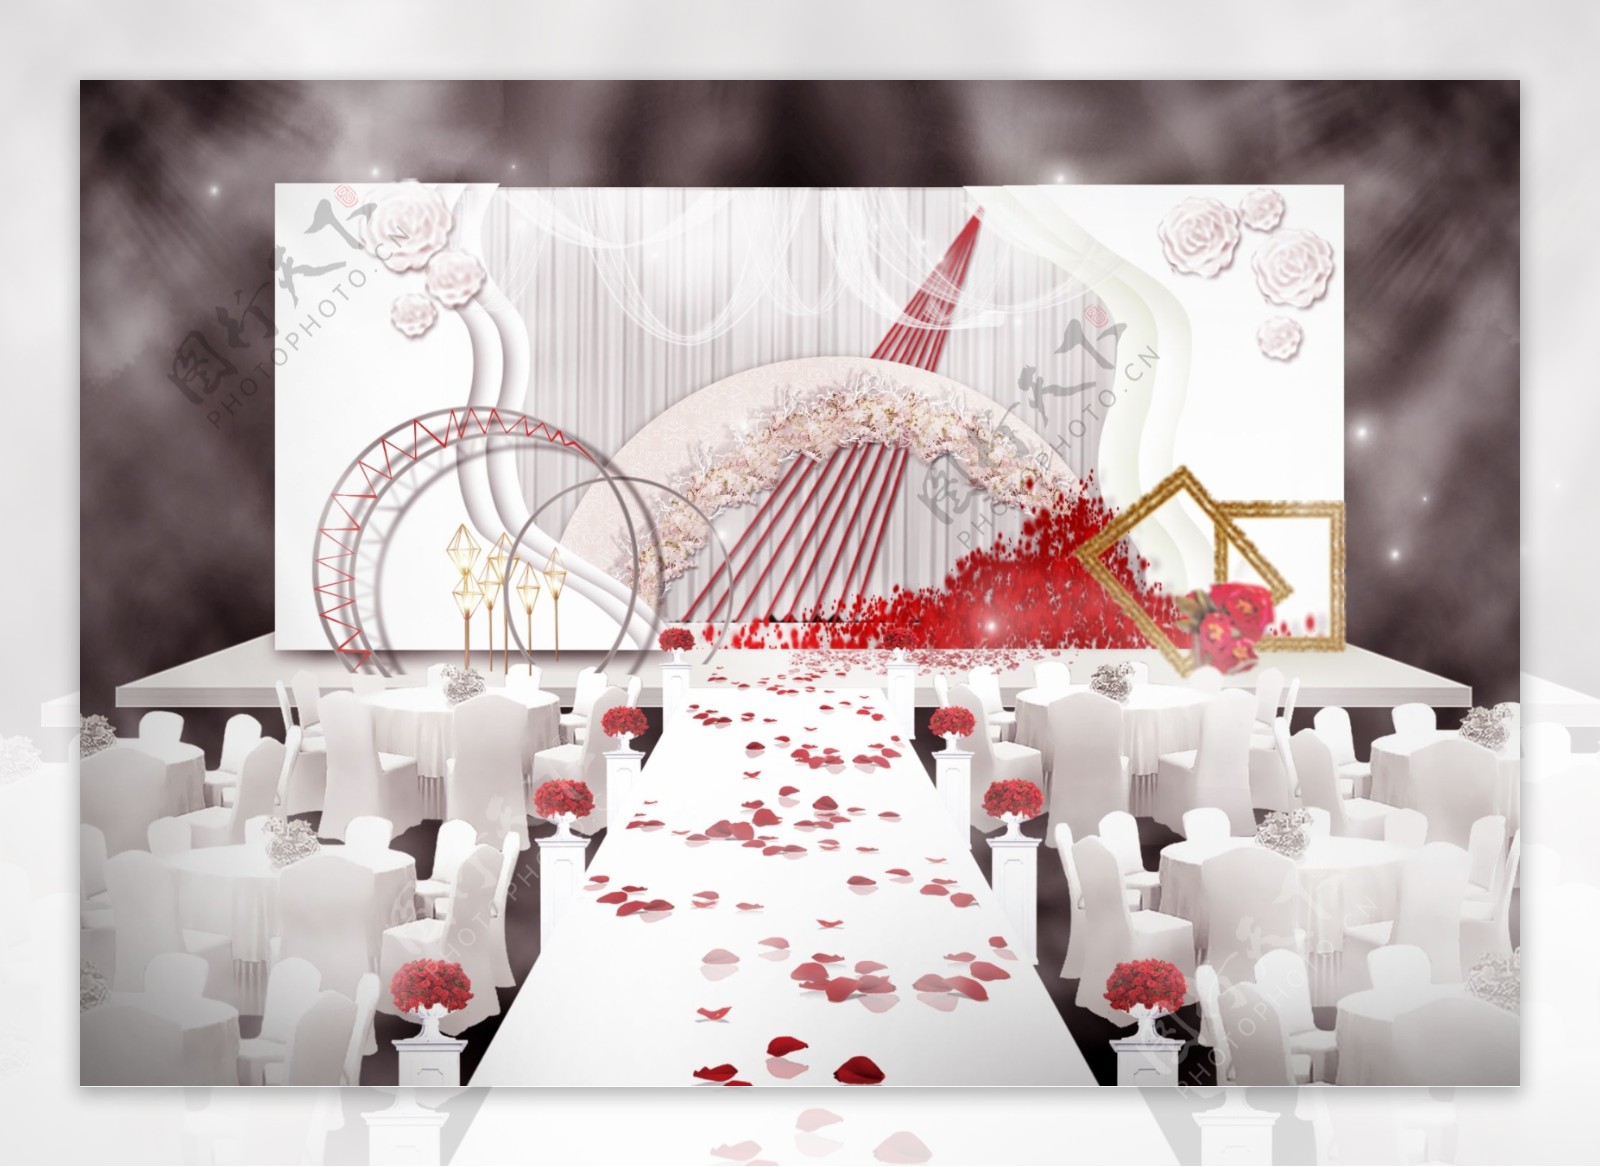 红白小清新婚礼效果图